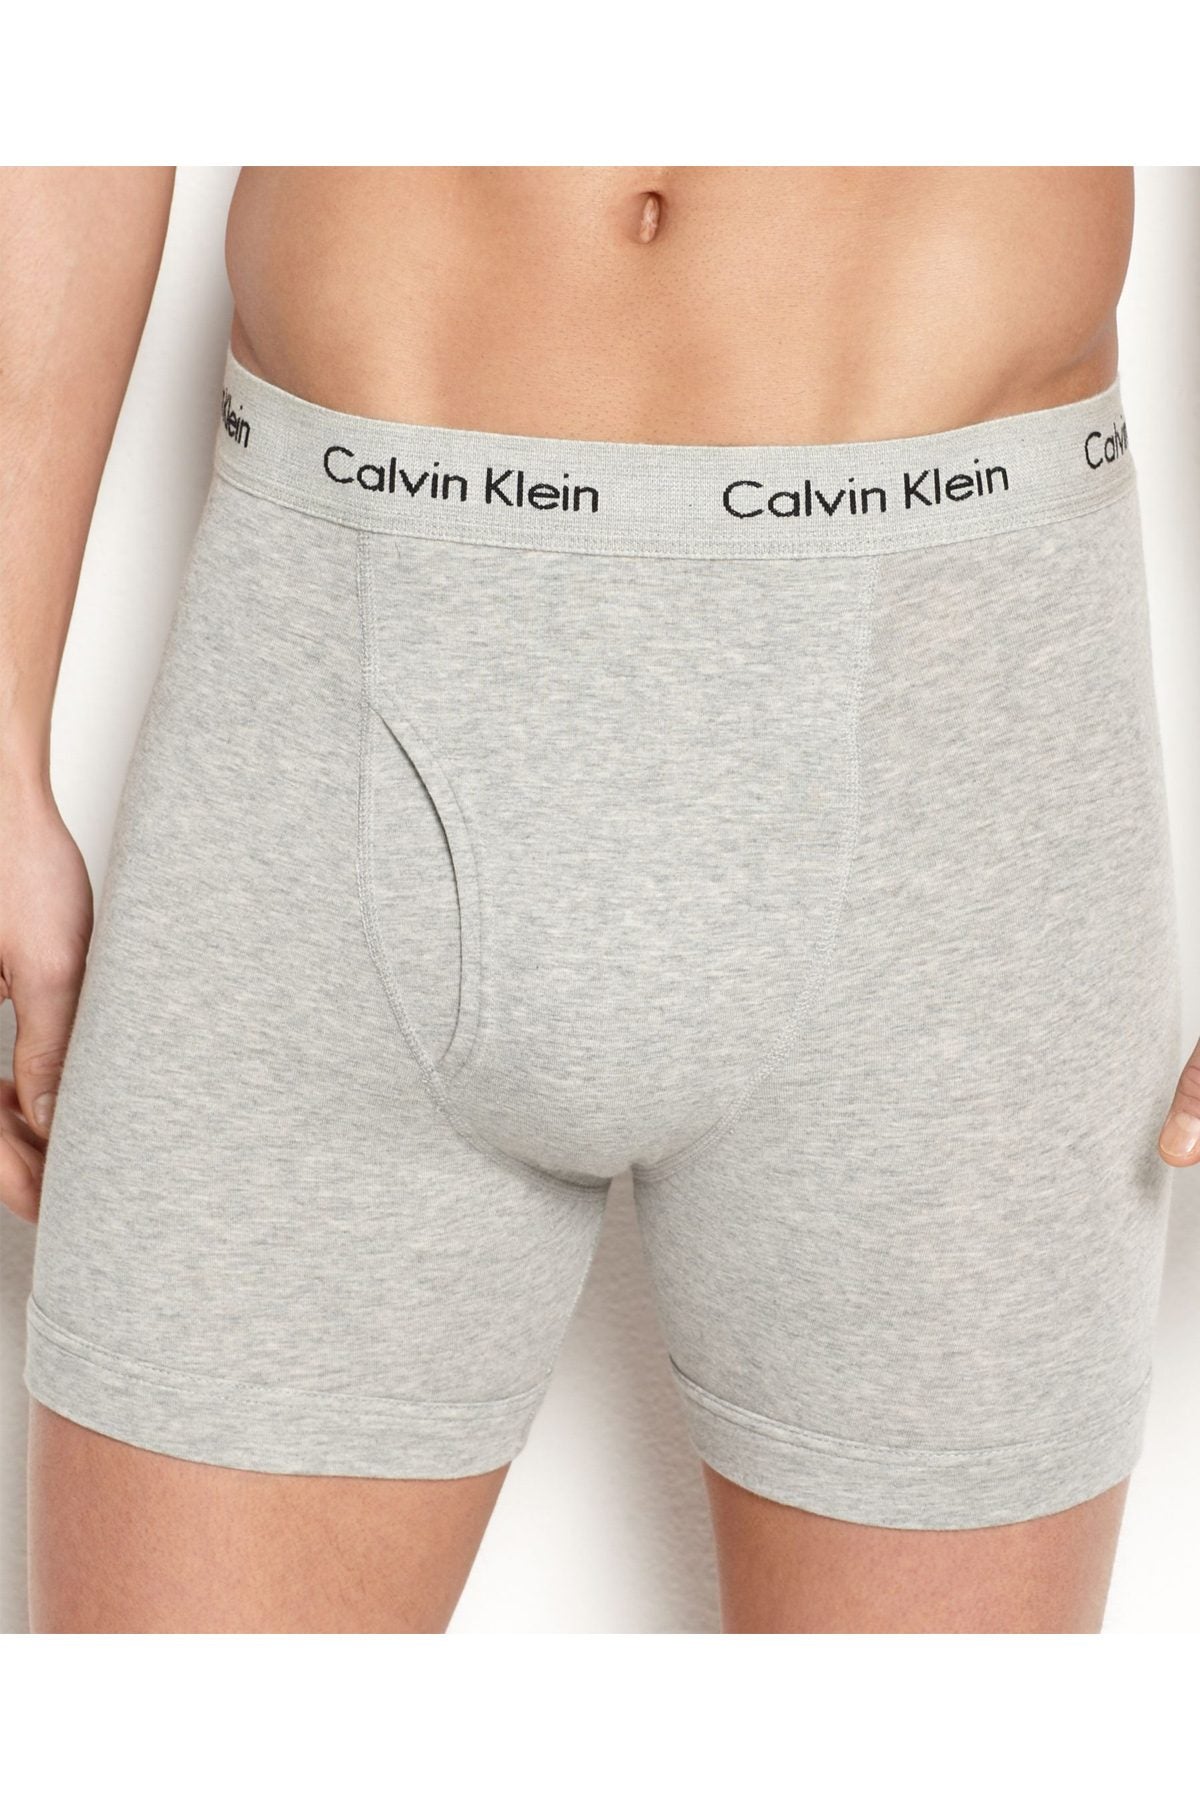 Calvin Klein Grey Cotton Stretch Boxer Brief 2-Pack